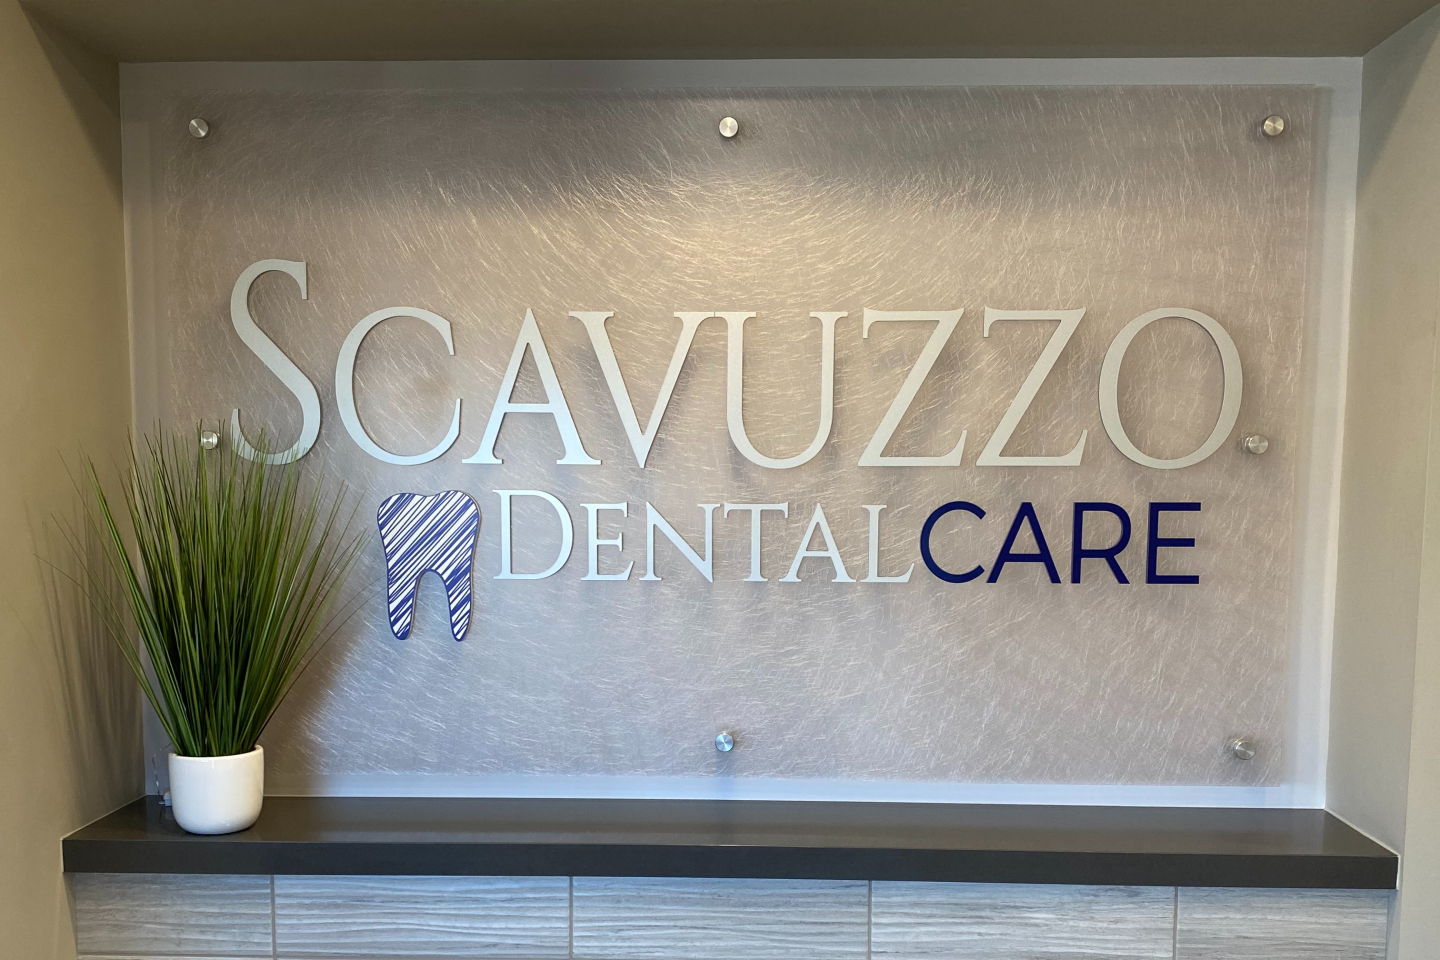 Contact Scavuzzo Dental Care